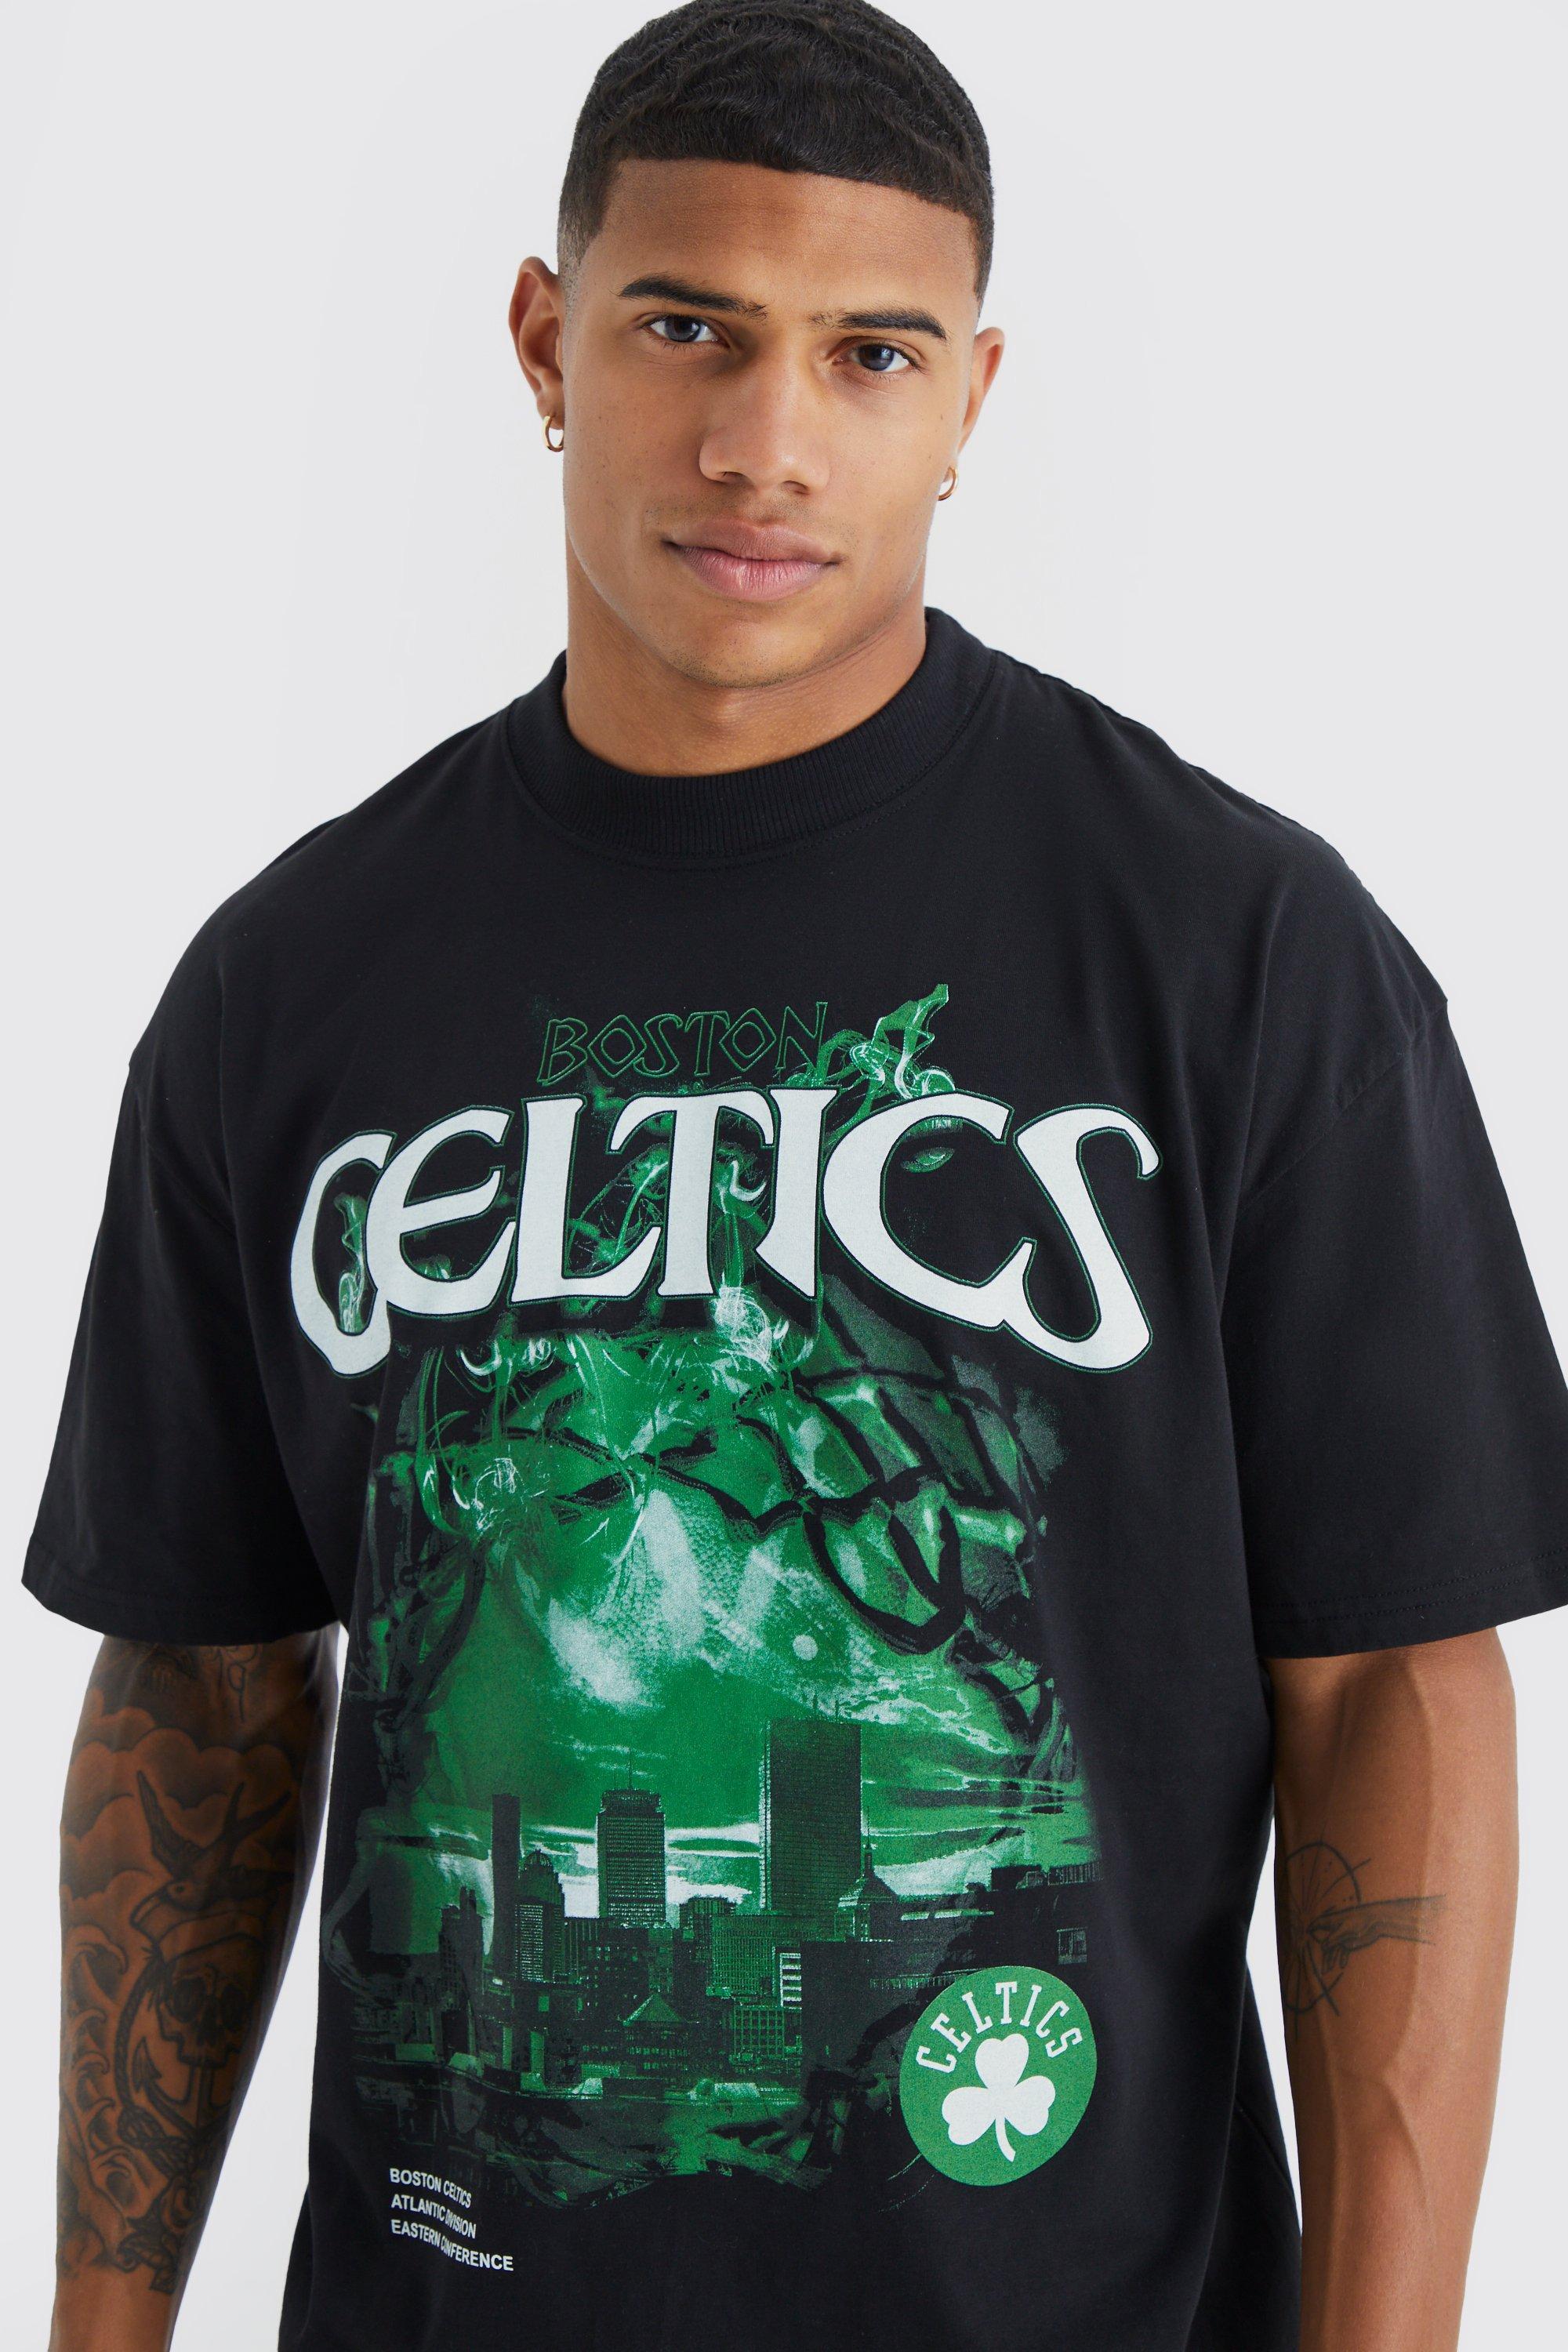 black boston celtics t shirt